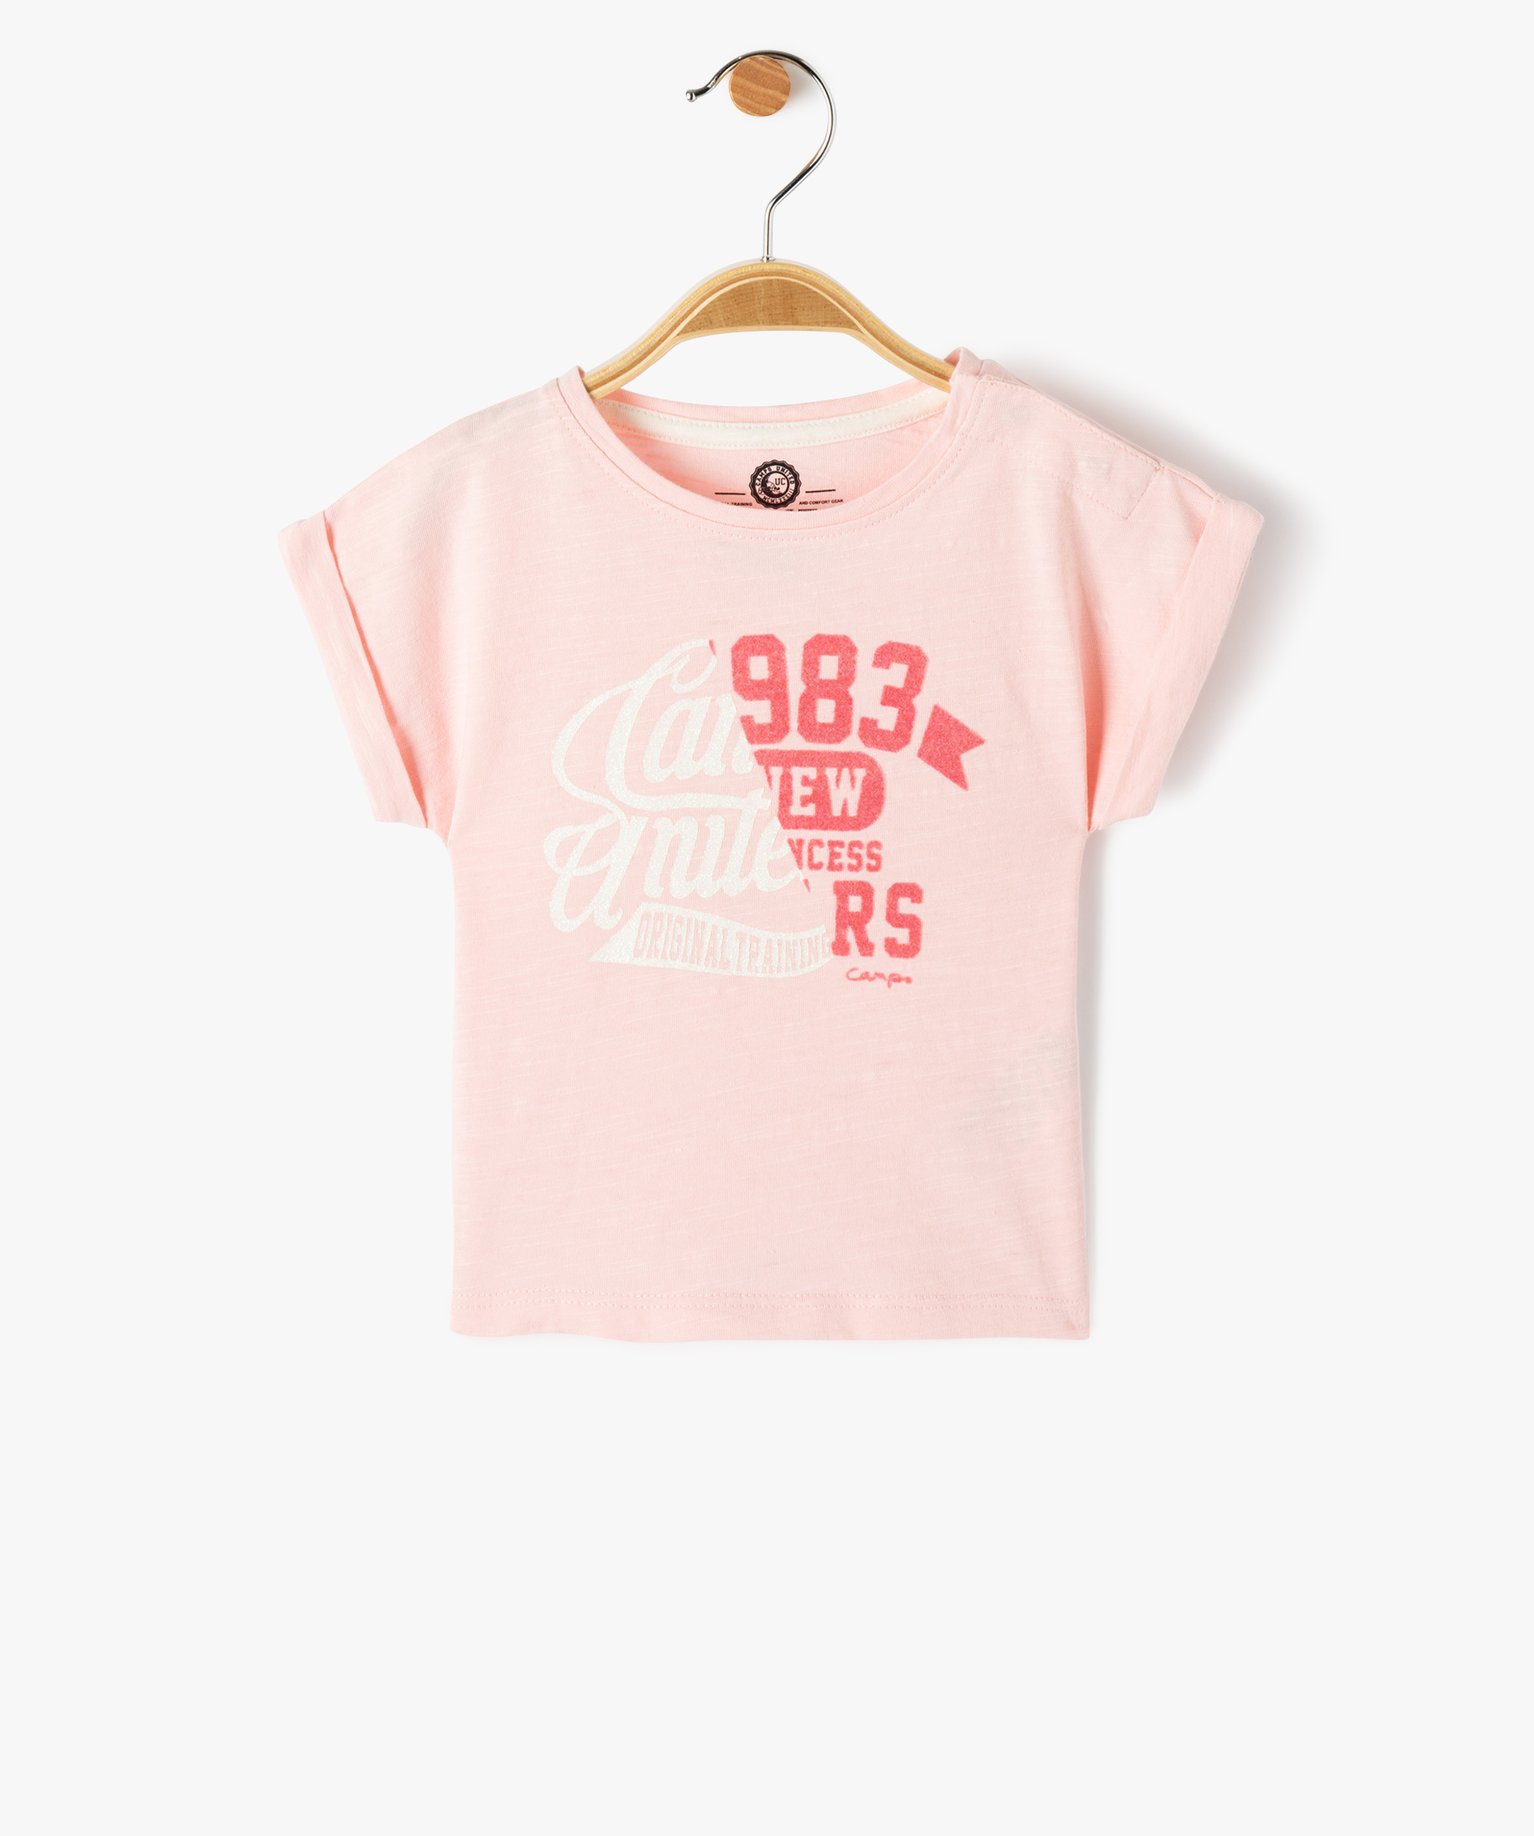 Tee-shirt bébé fille avec inscription pailletée - Camps United - 3 - rose - CAMPS UNITED